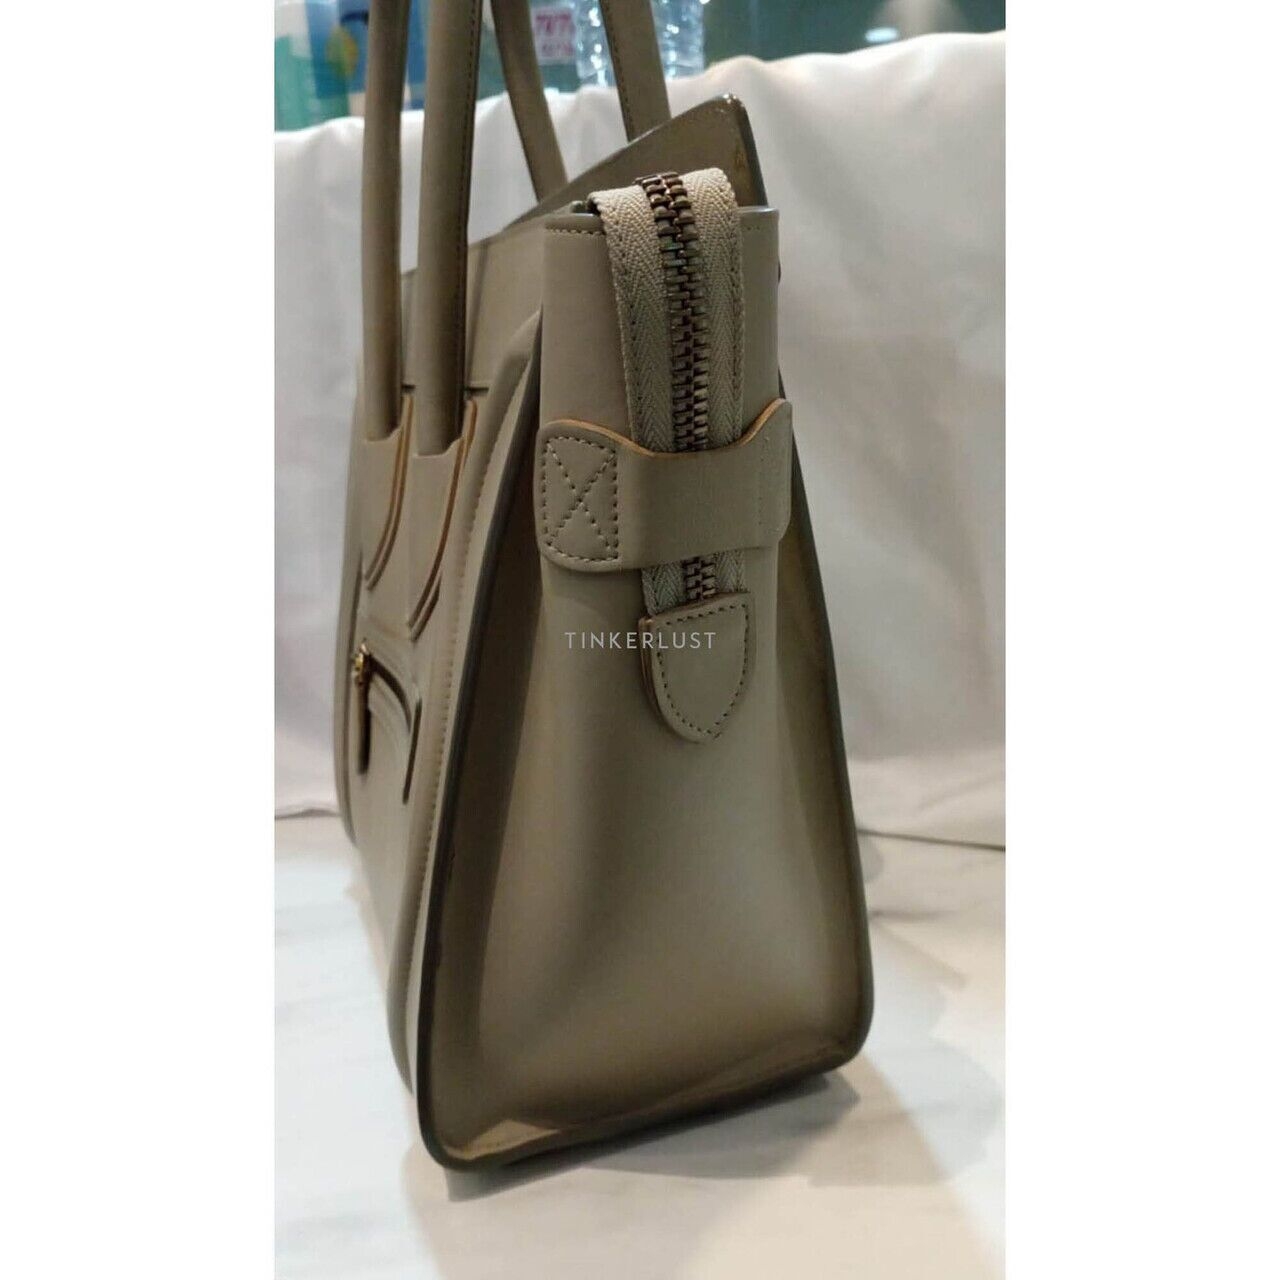 Celine Mini Luggage Taupe 2016 Handbag